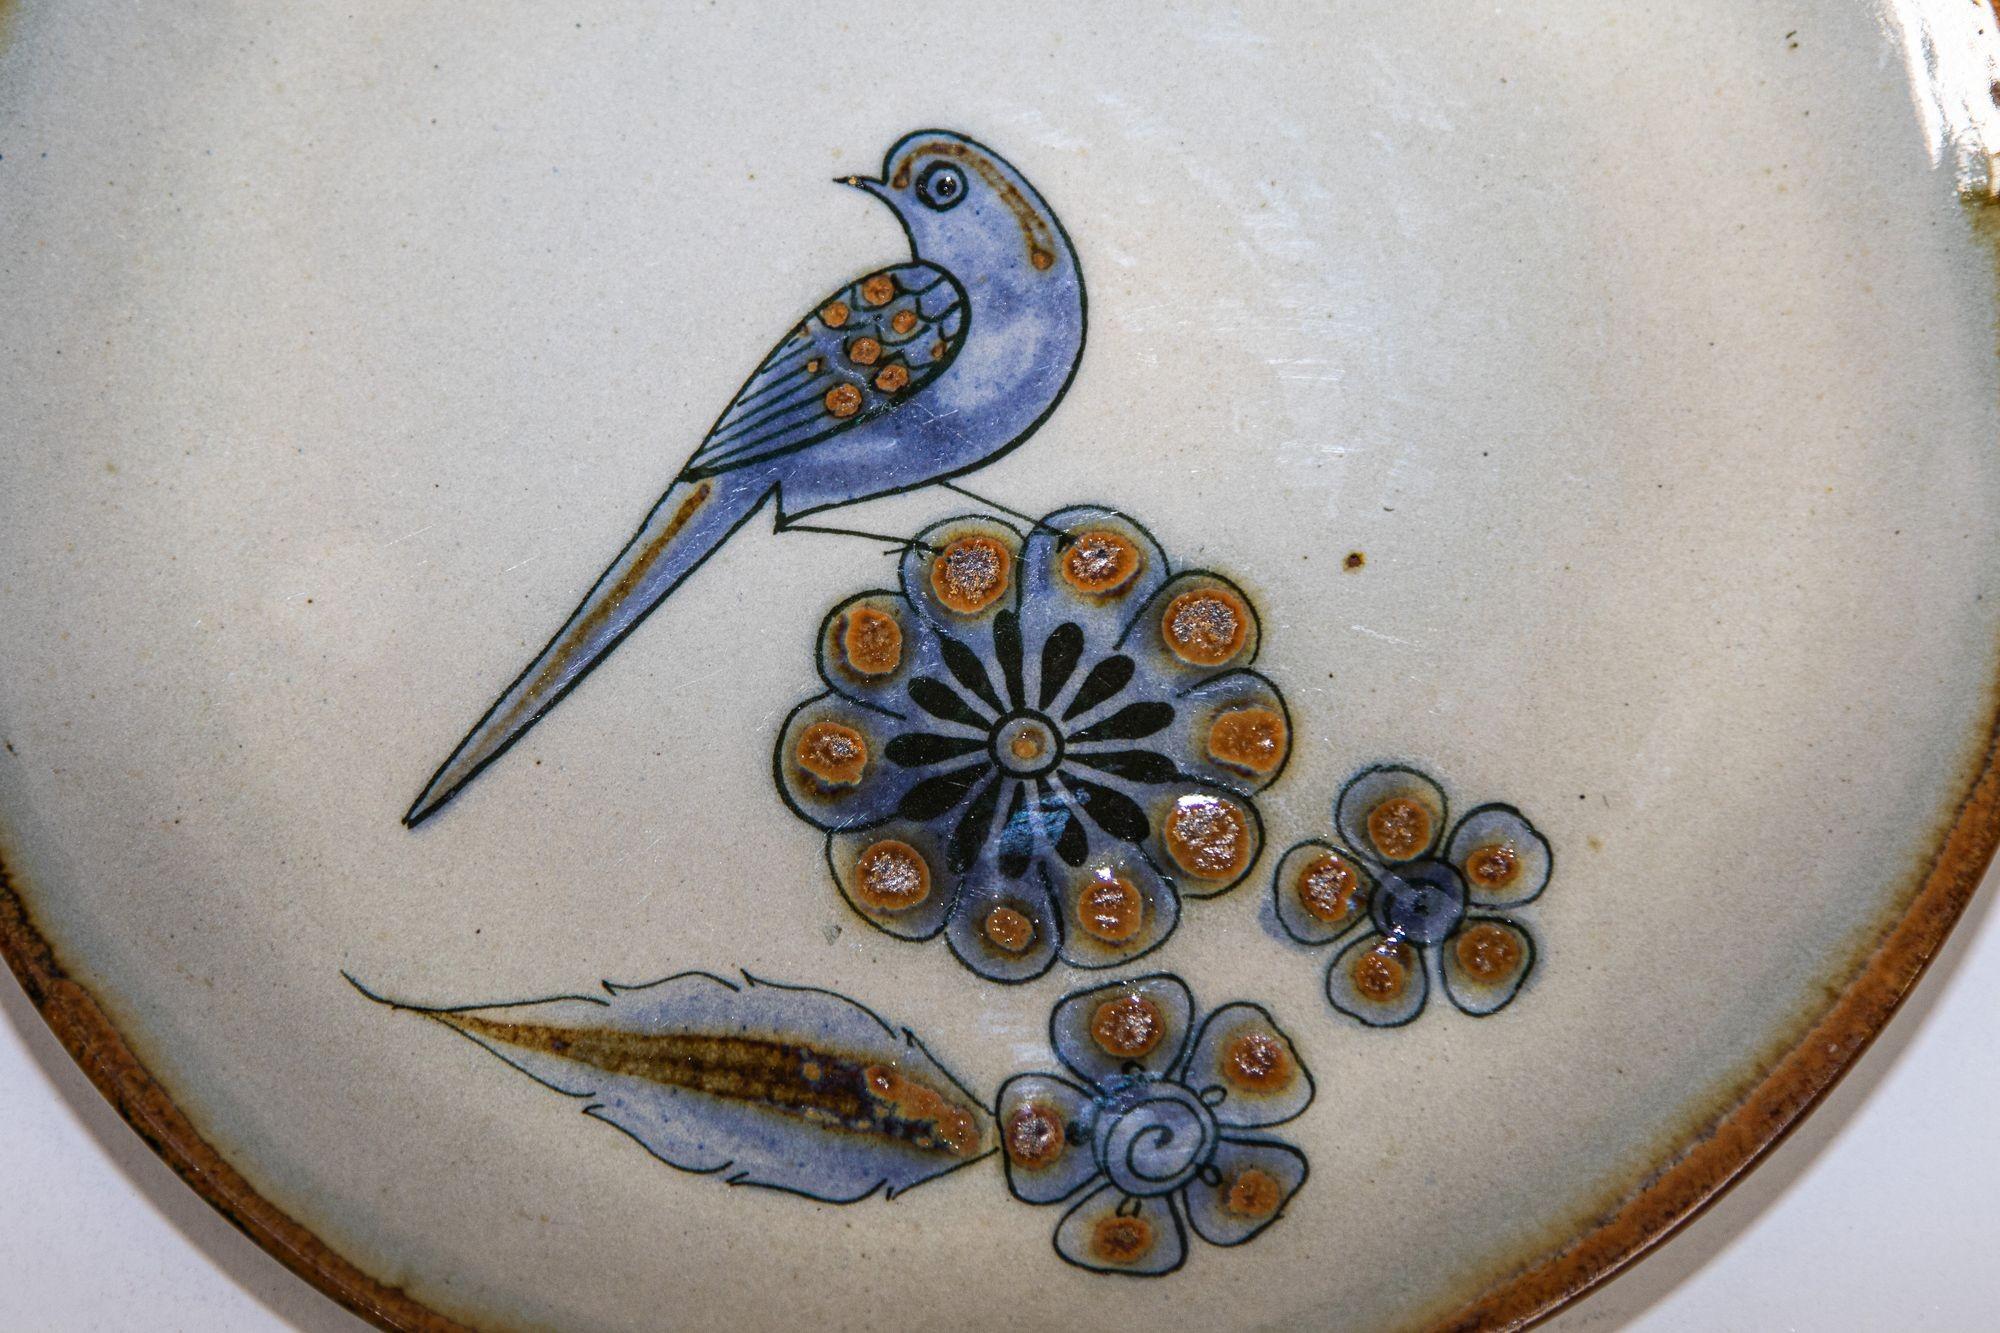 Assiette en céramique Ken Edwards fabriquée à la main Tonala Mexico Folk Art Pottery.
Vintage Ken Edwards, dessous de plat en céramique mexicaine représentant un oiseau, provenant de la poterie Tonala.
Magnifique poterie d'art mexicaine TONALA,